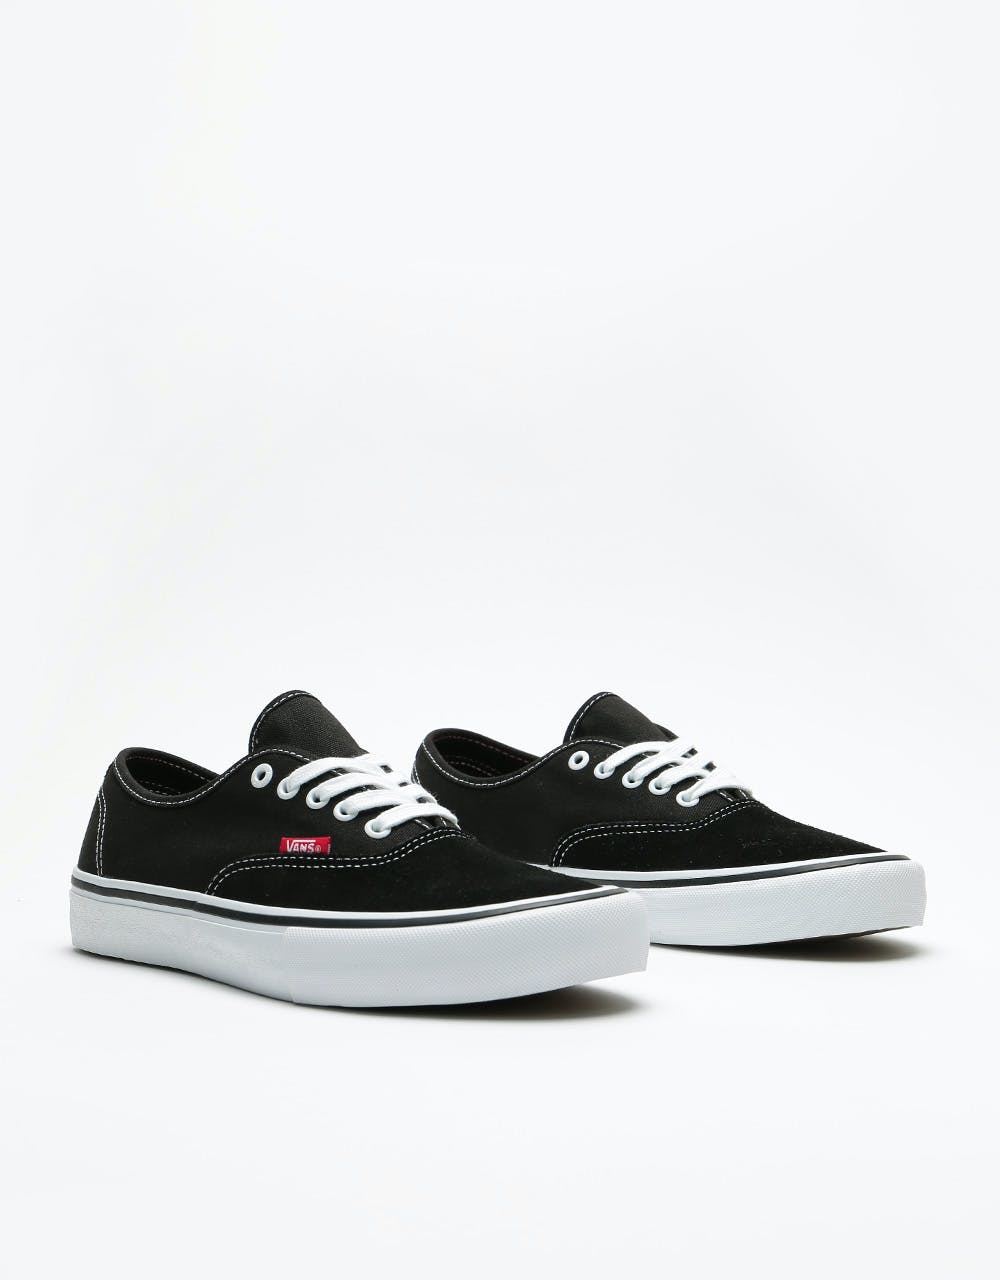 Vans Authentic Pro Skate Shoes - Black/True White